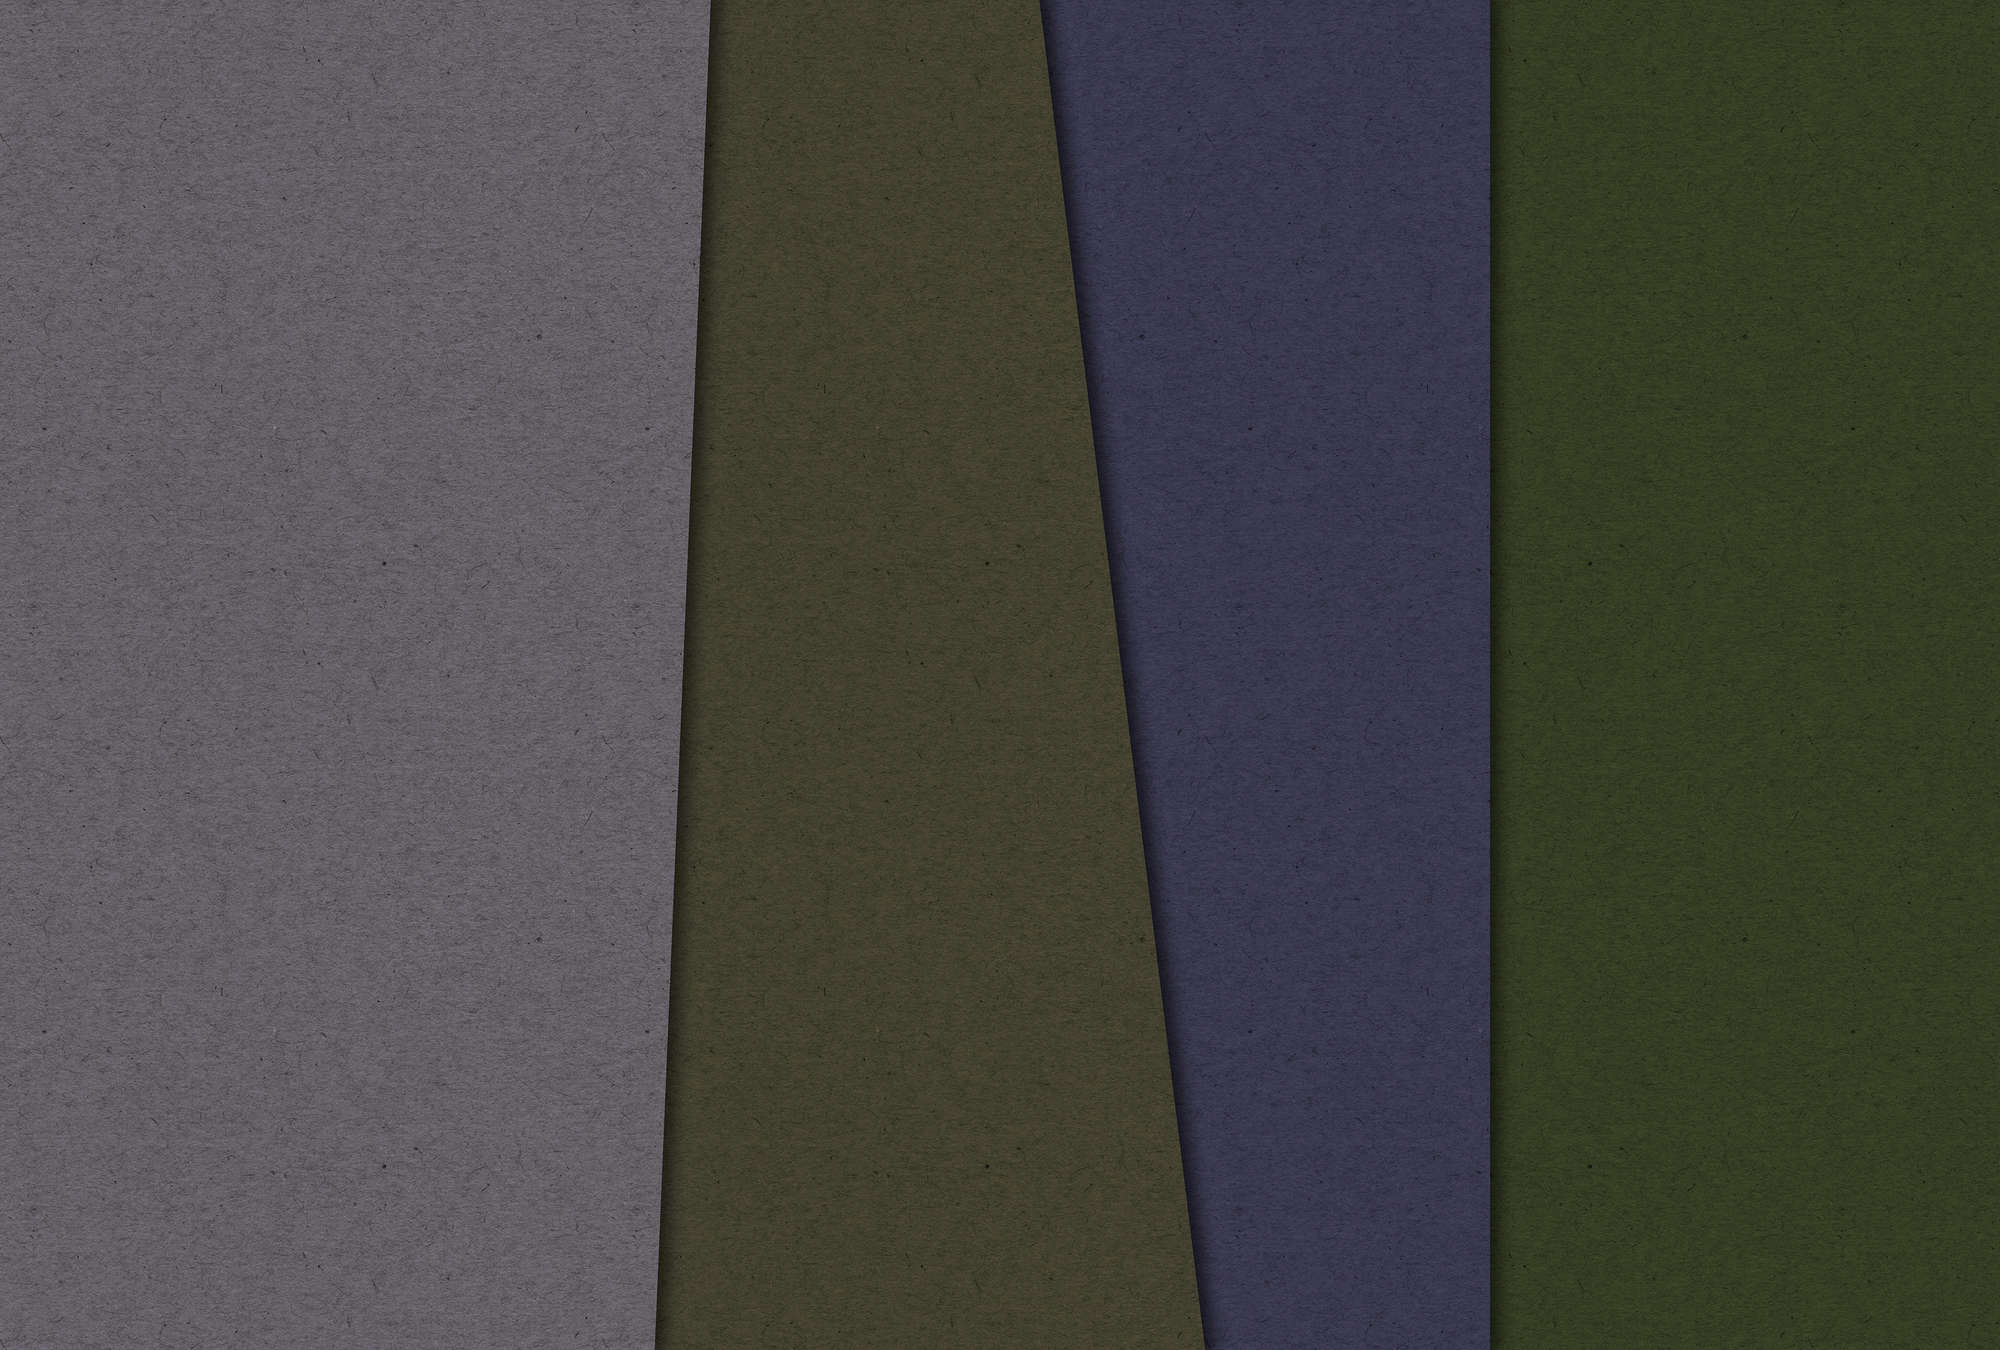             Layered Cardboard 3 - Fototapete minimalistisch & abstrakt- Pappe Struktur – Grün, Violett | Perlmutt Glattvlies
        